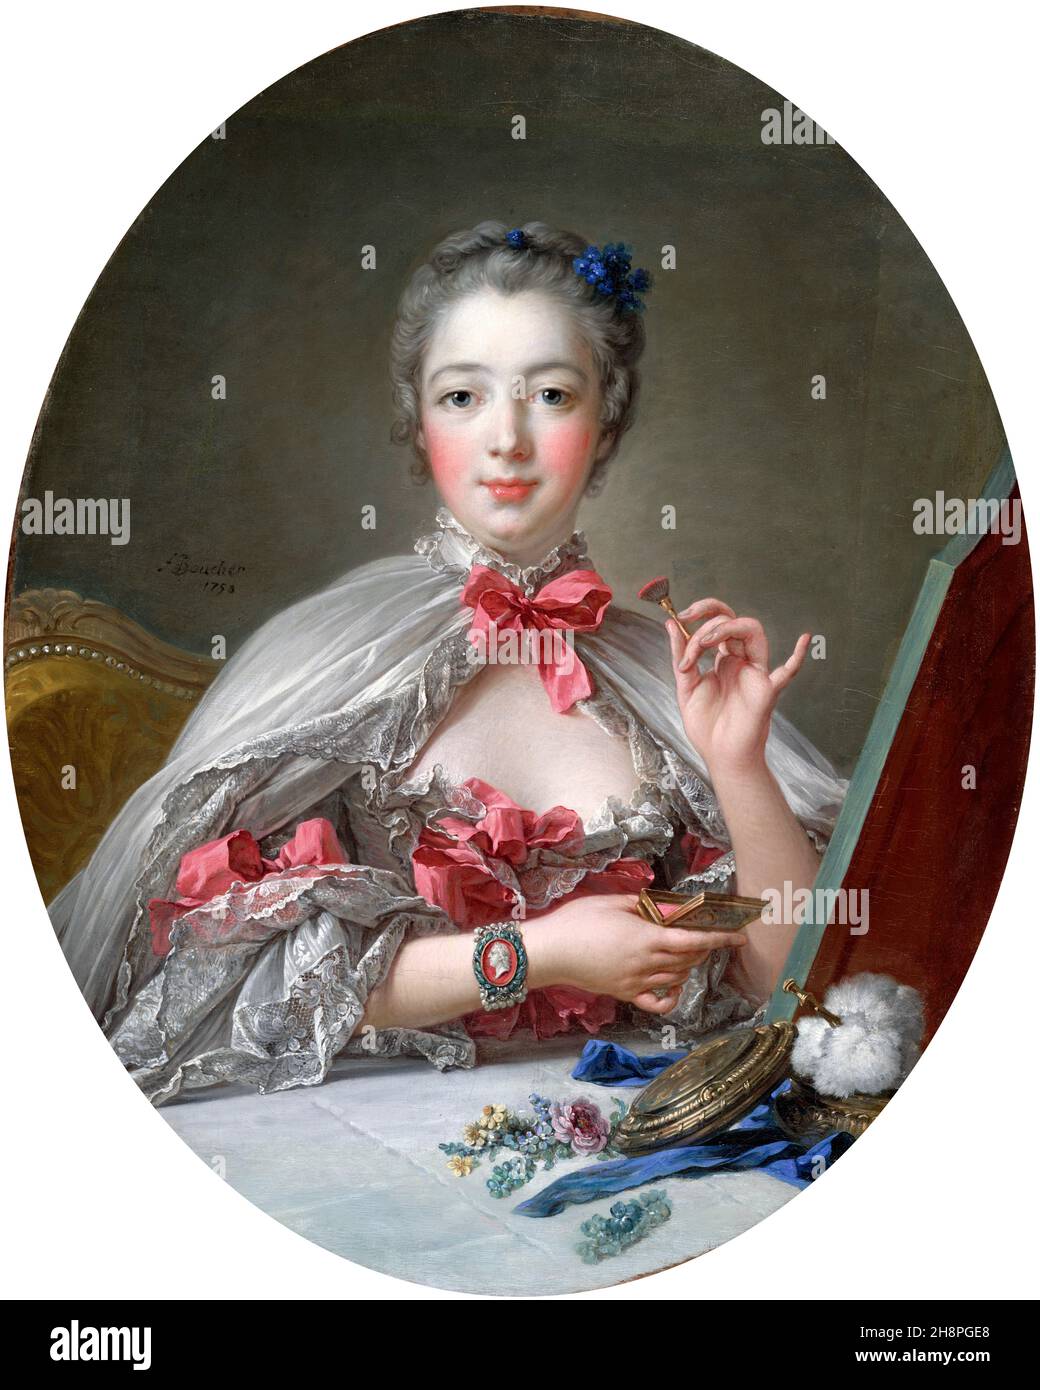 Madame de Pompadour. Ritratto di Jeanne Antoinette Poisson, Marchise de Pompadour (1721-1764) di Francois Boucher, olio su tela, 1750. Madame de Pompadour fu membro della corte francese e direttore ufficiale di Luigi XV dal 1745 al 1751. Foto Stock